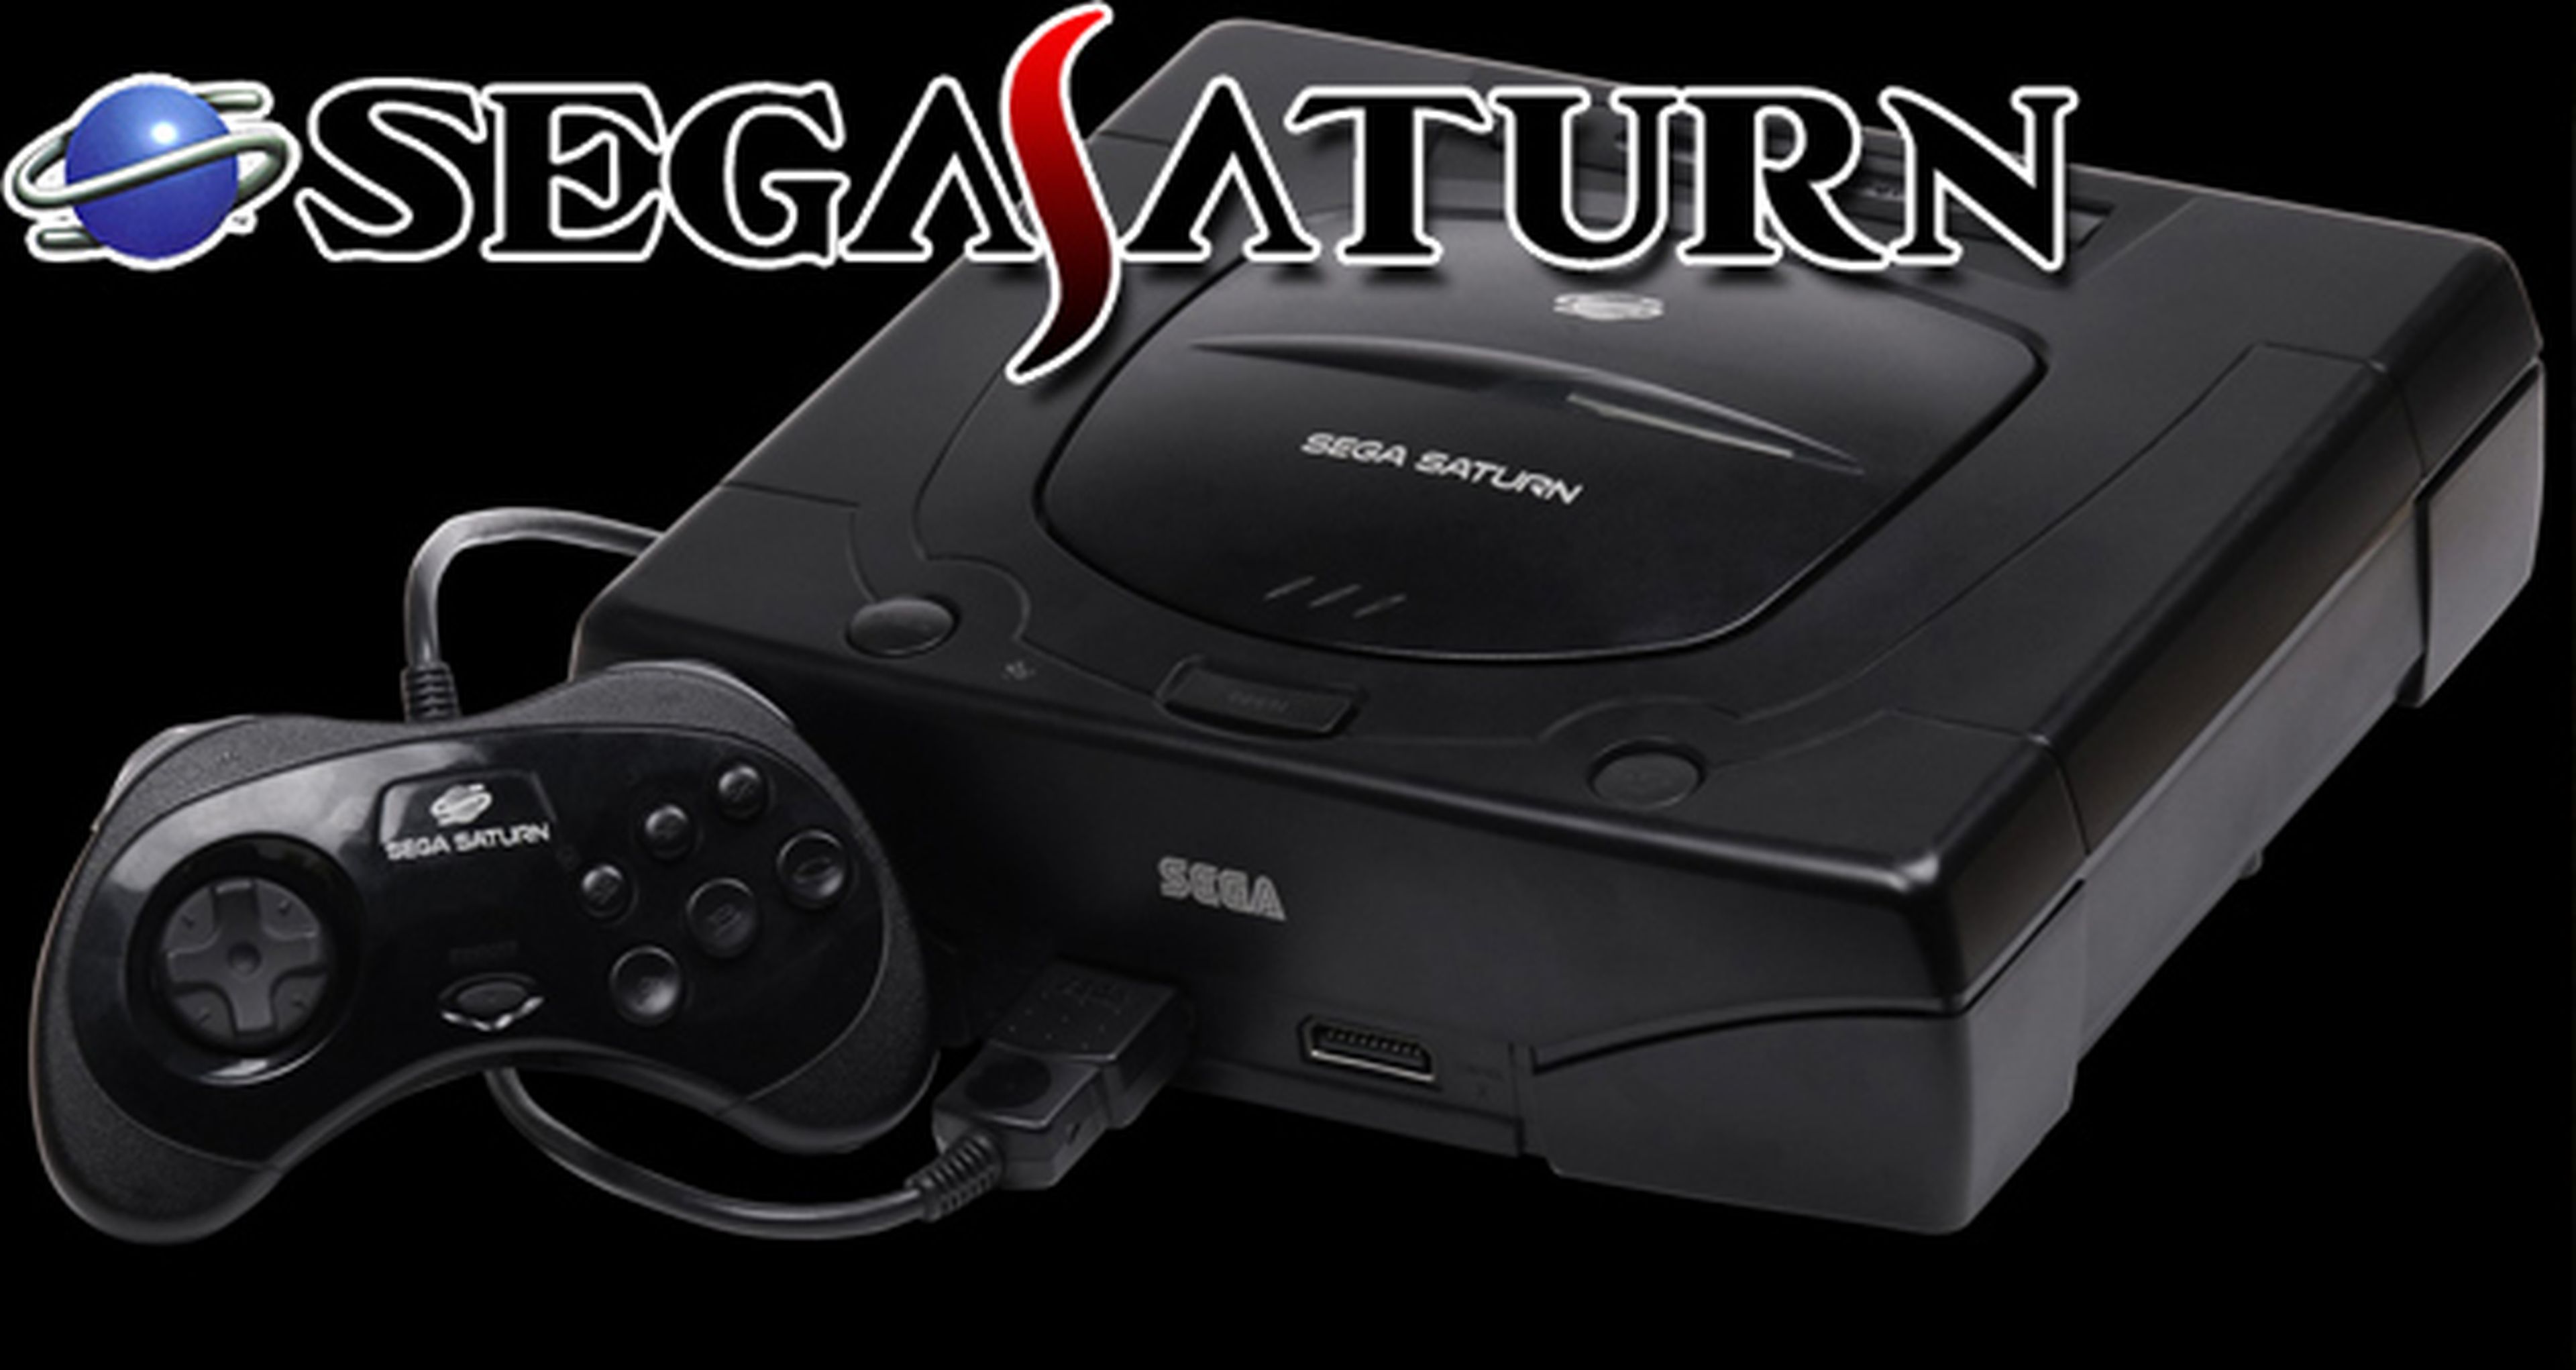 Sega Saturn cumple 20 años desde su lanzamiento